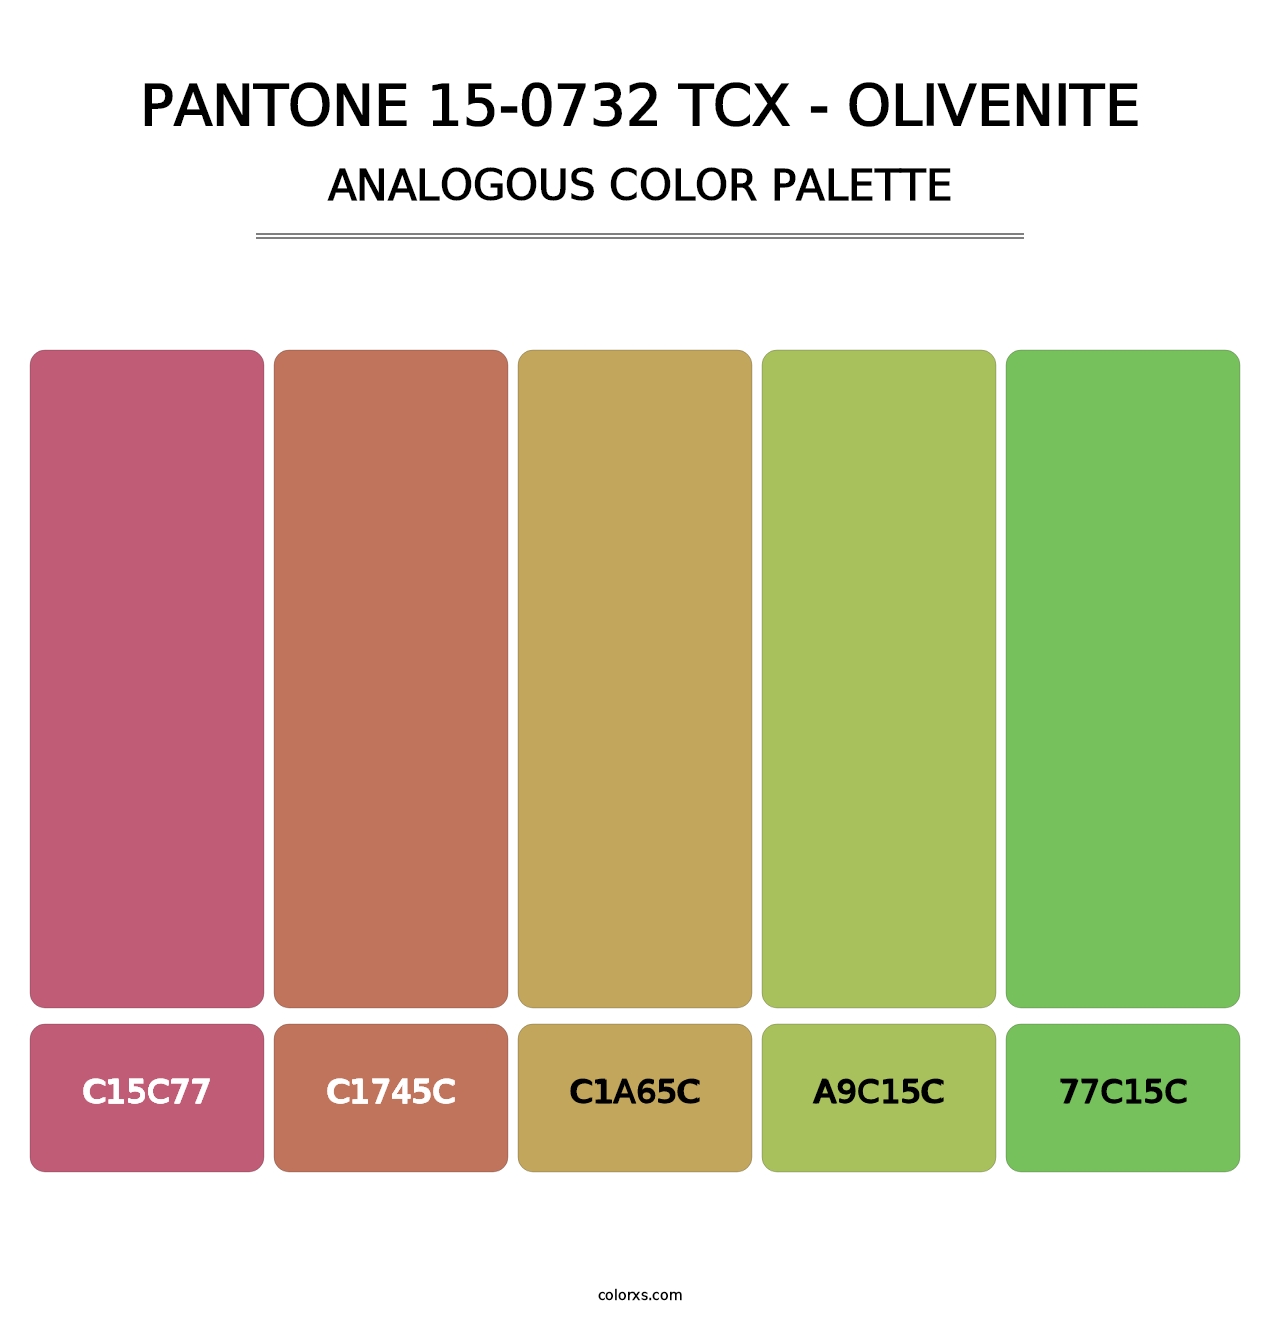 PANTONE 15-0732 TCX - Olivenite - Analogous Color Palette